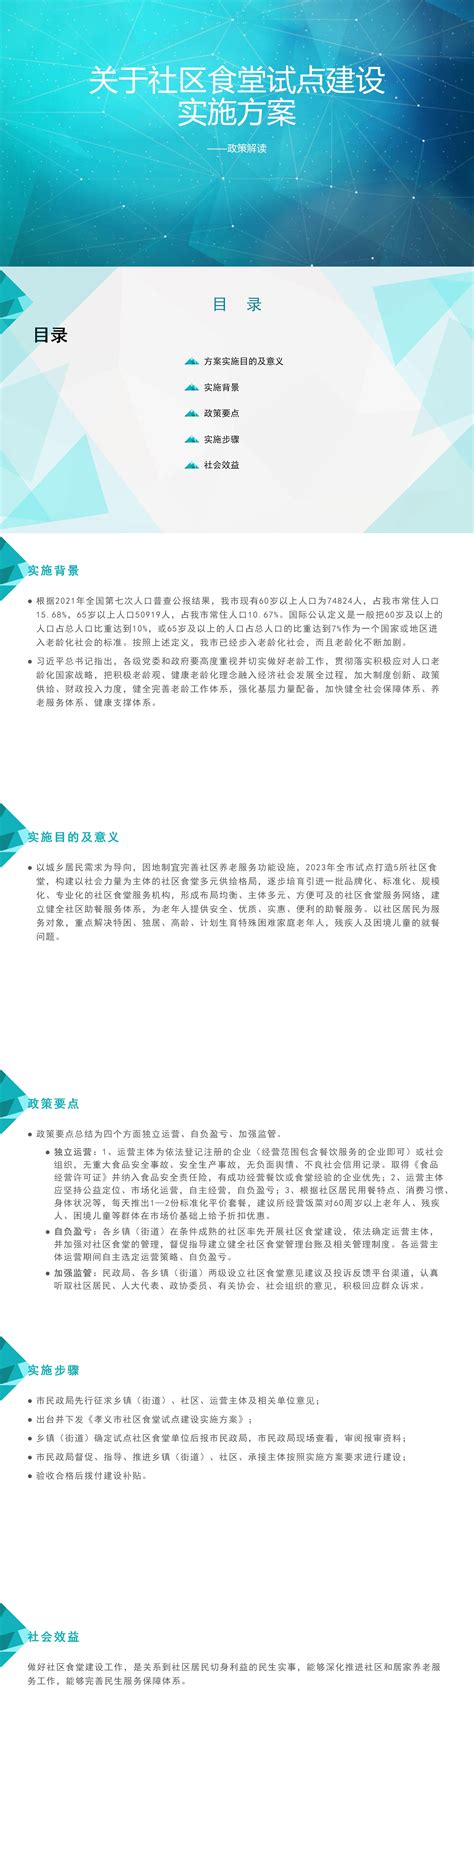 孝义市关于公开遴选2023年山西省农业机械化技术集成示范基地承担主体的公告